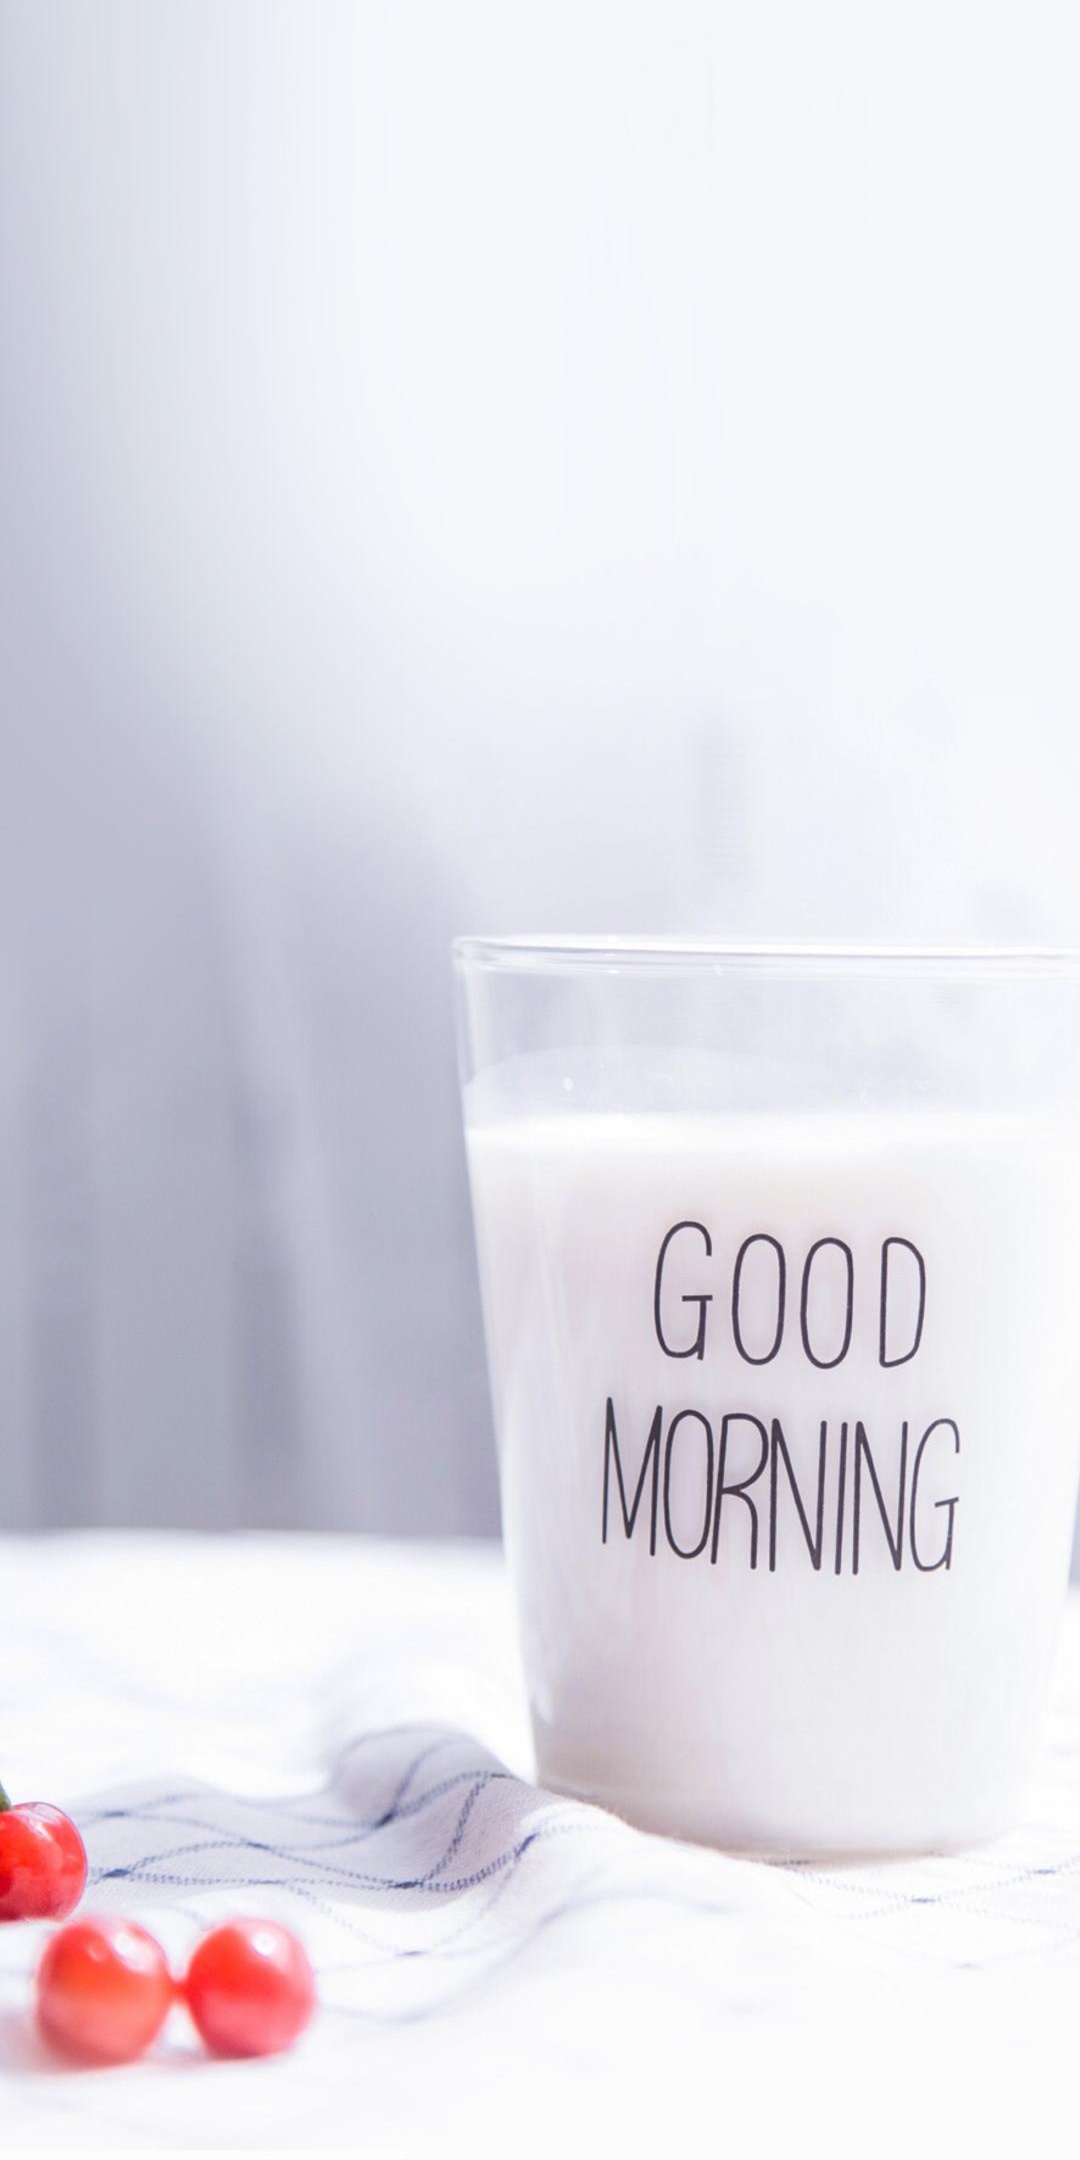 早安,来一杯牛奶